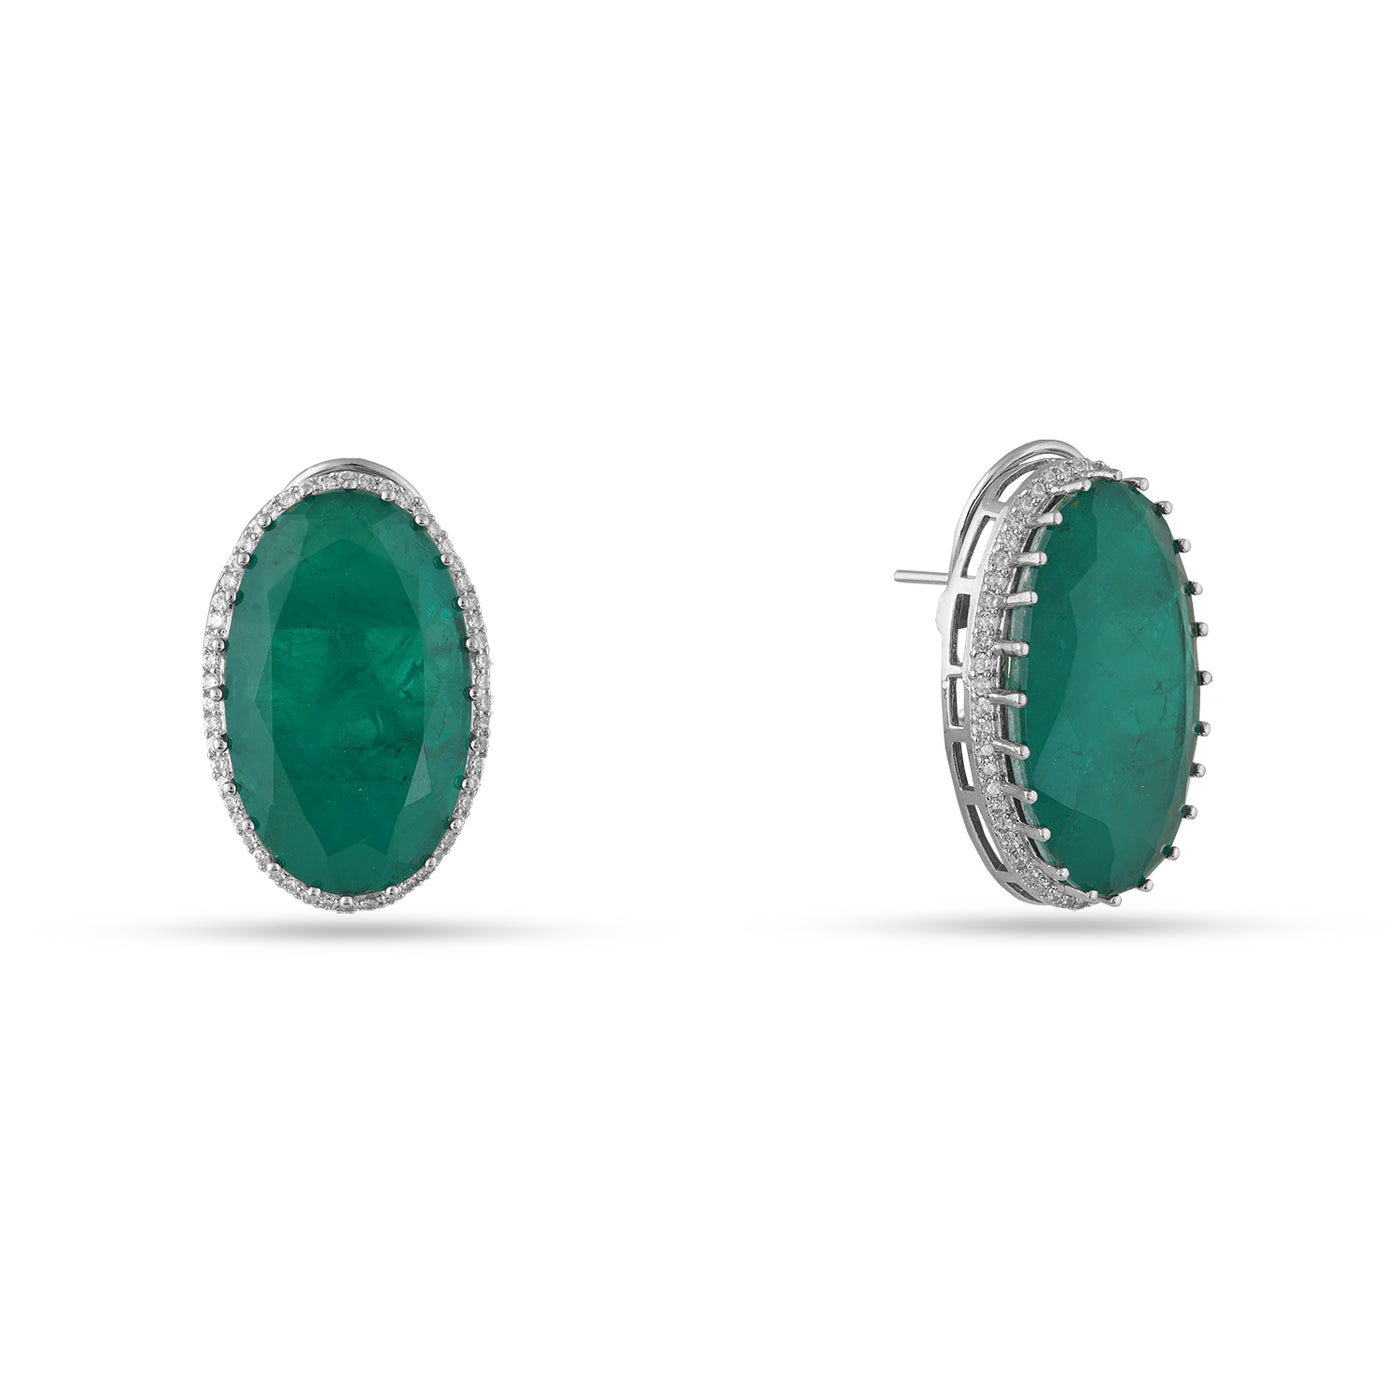 Hameeda - Green Stone necklace set